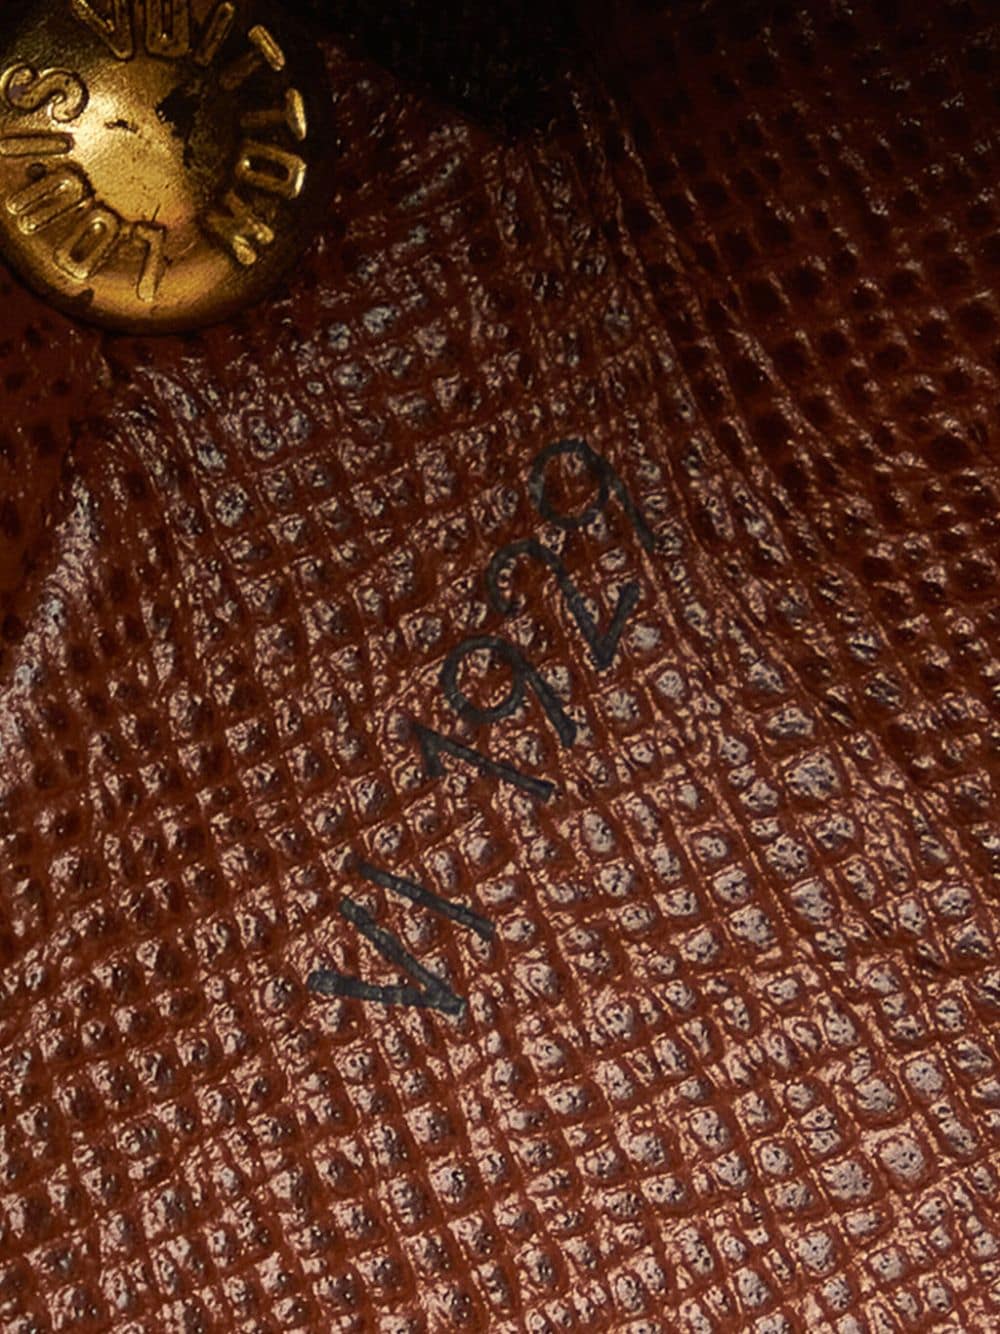 Louis Vuitton 1999 Pre-owned Monogram Drouot Shoulder Bag - Brown